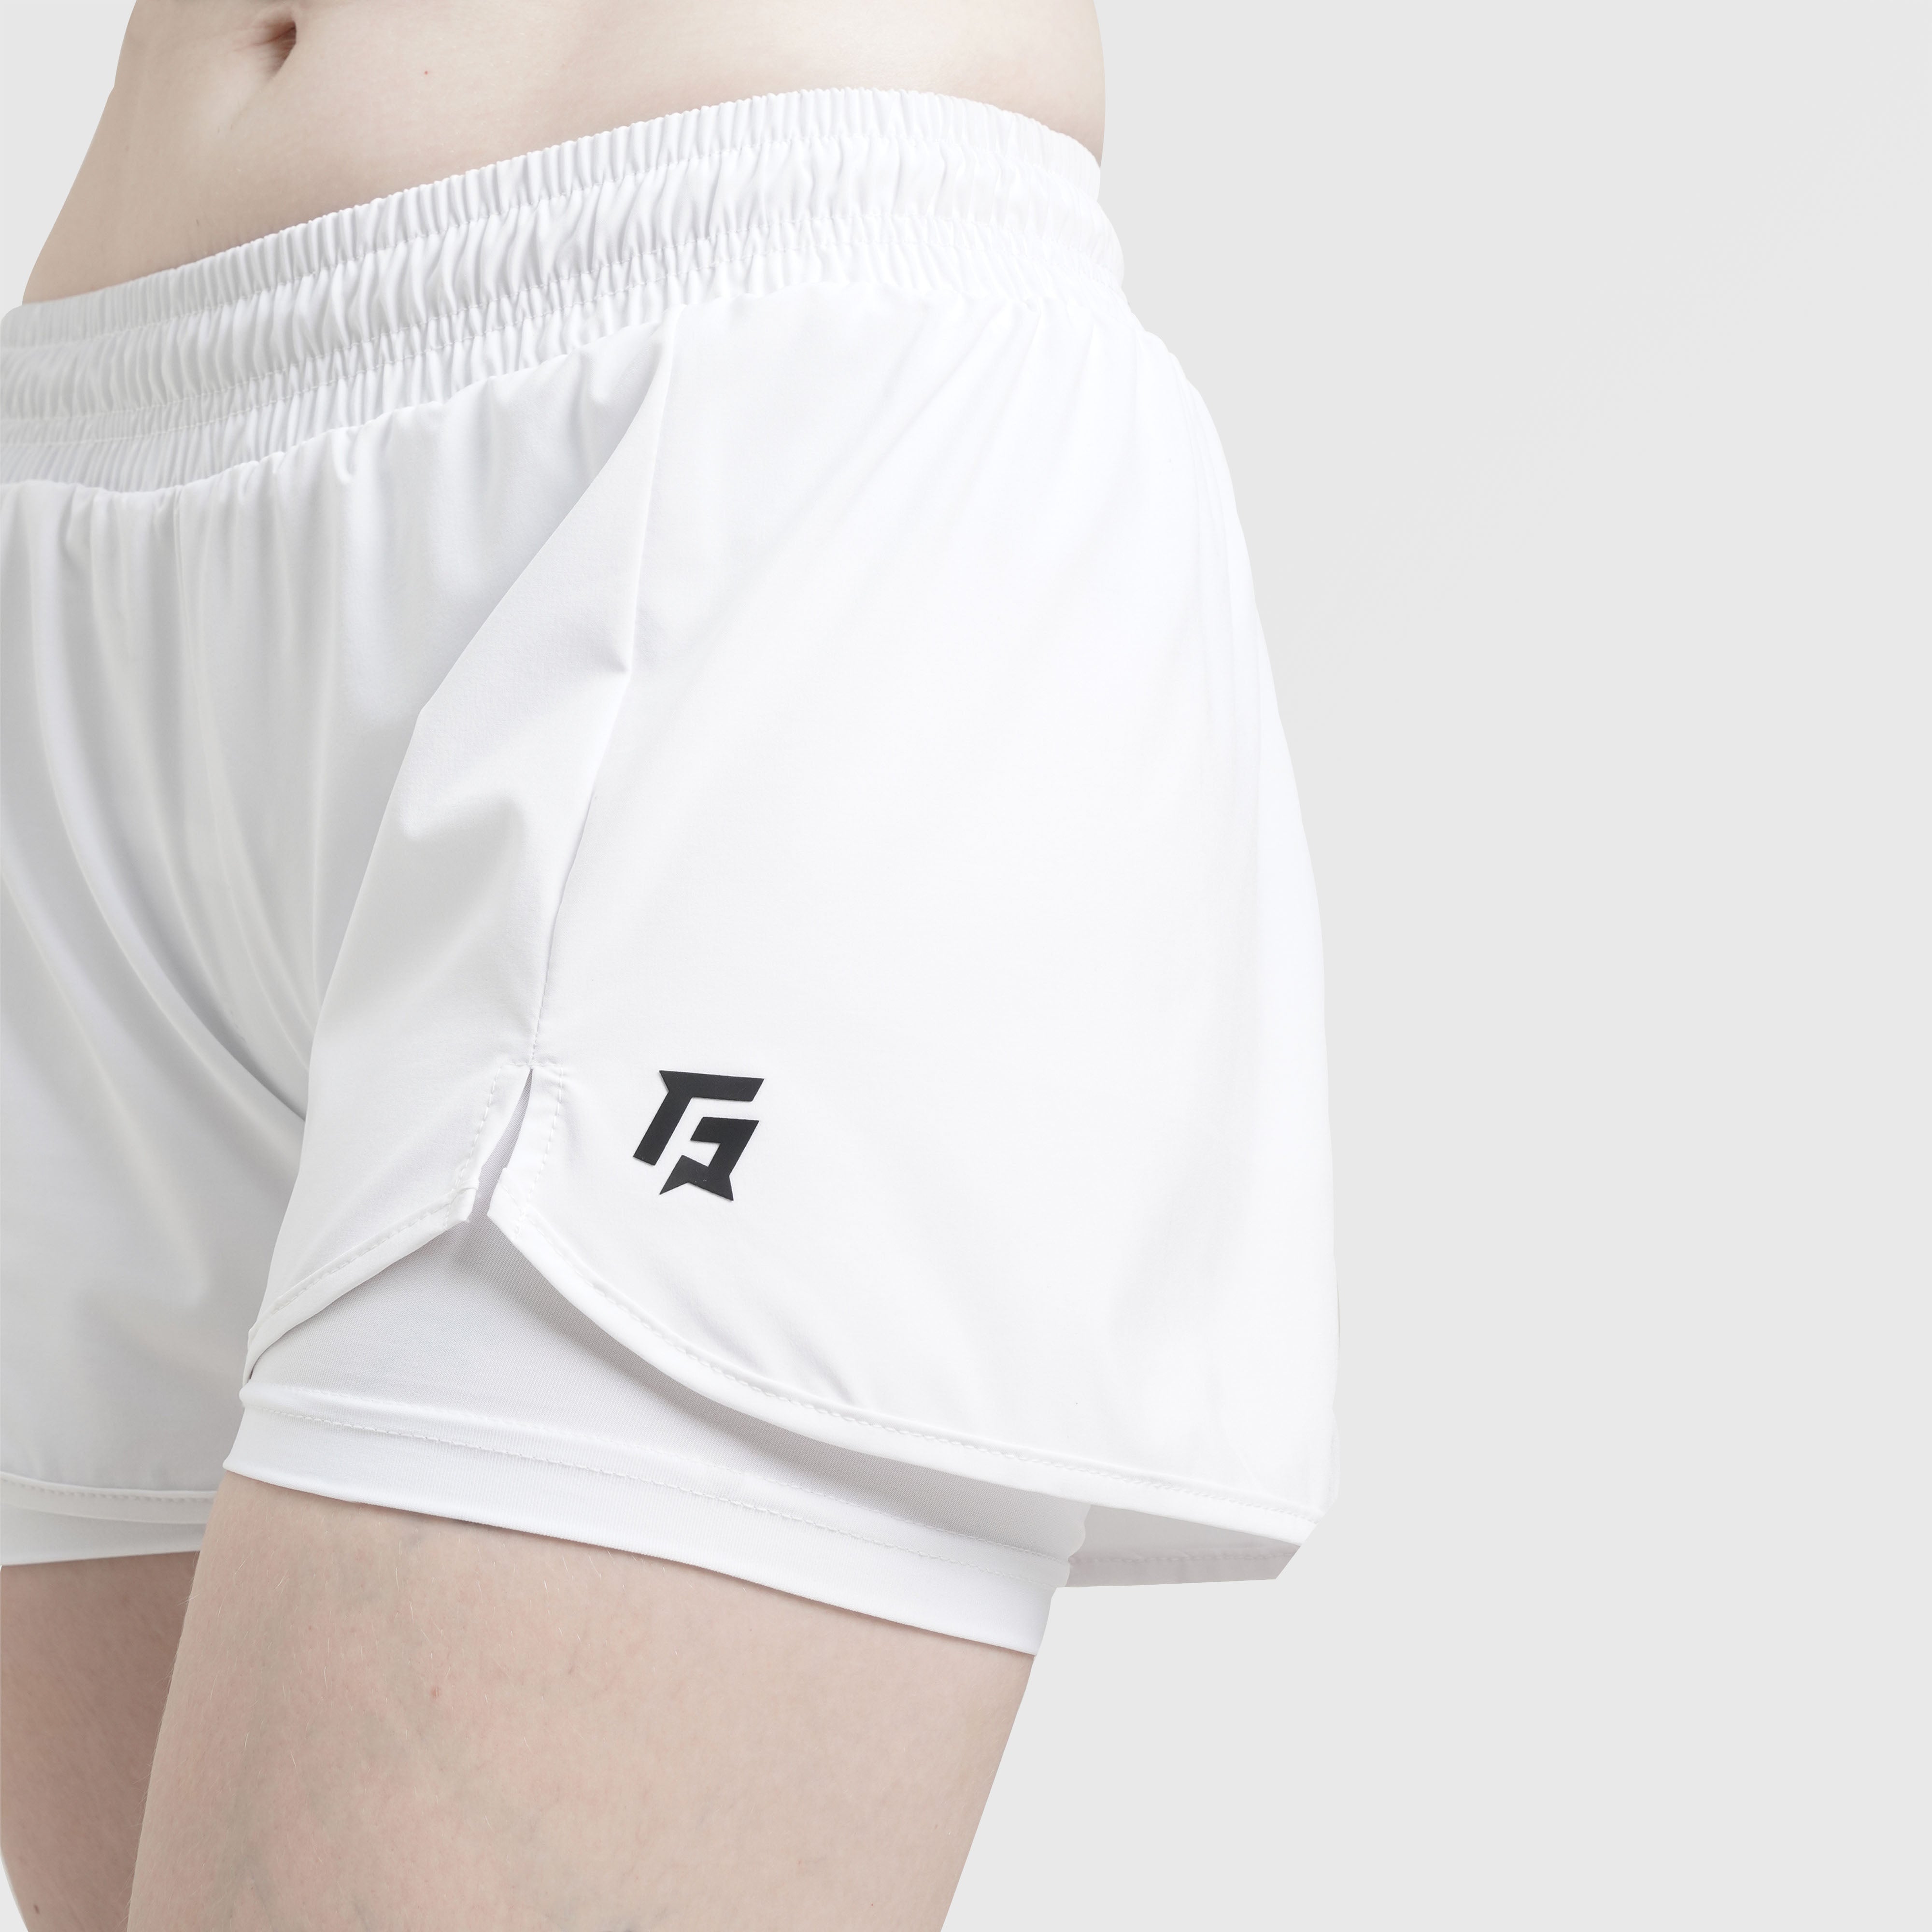 Erge Shorts (White)